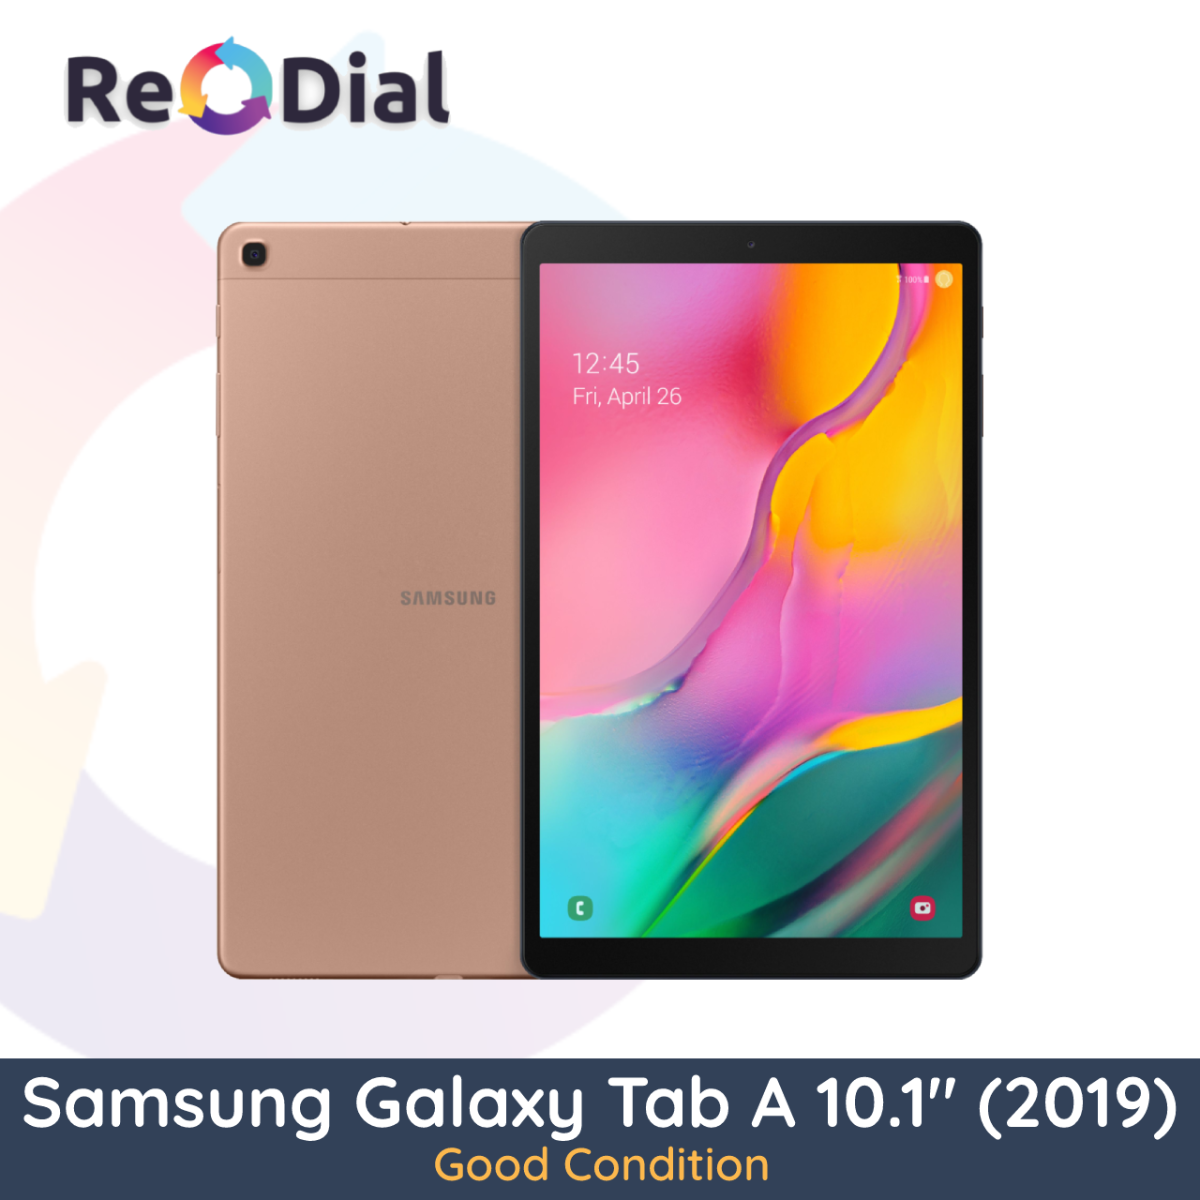 Samsung Galaxy Tab A 10.1" (2019) WiFi + Cellular - Good Condition